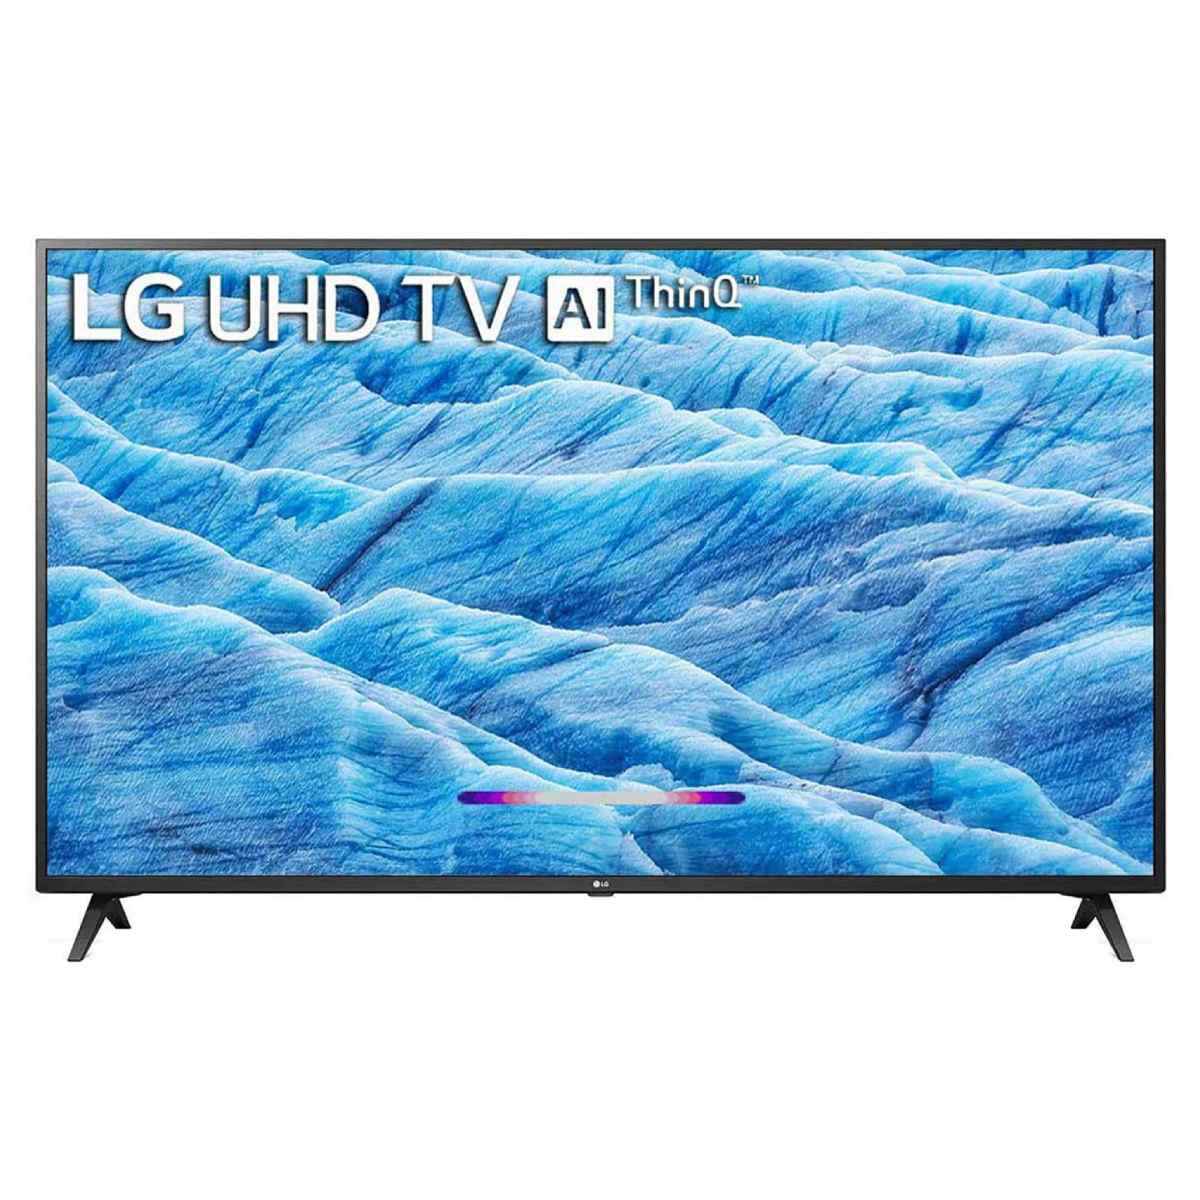 LG 65 inches 4K Ultra HD Smart IPS LED TV (65UM7290PTD)